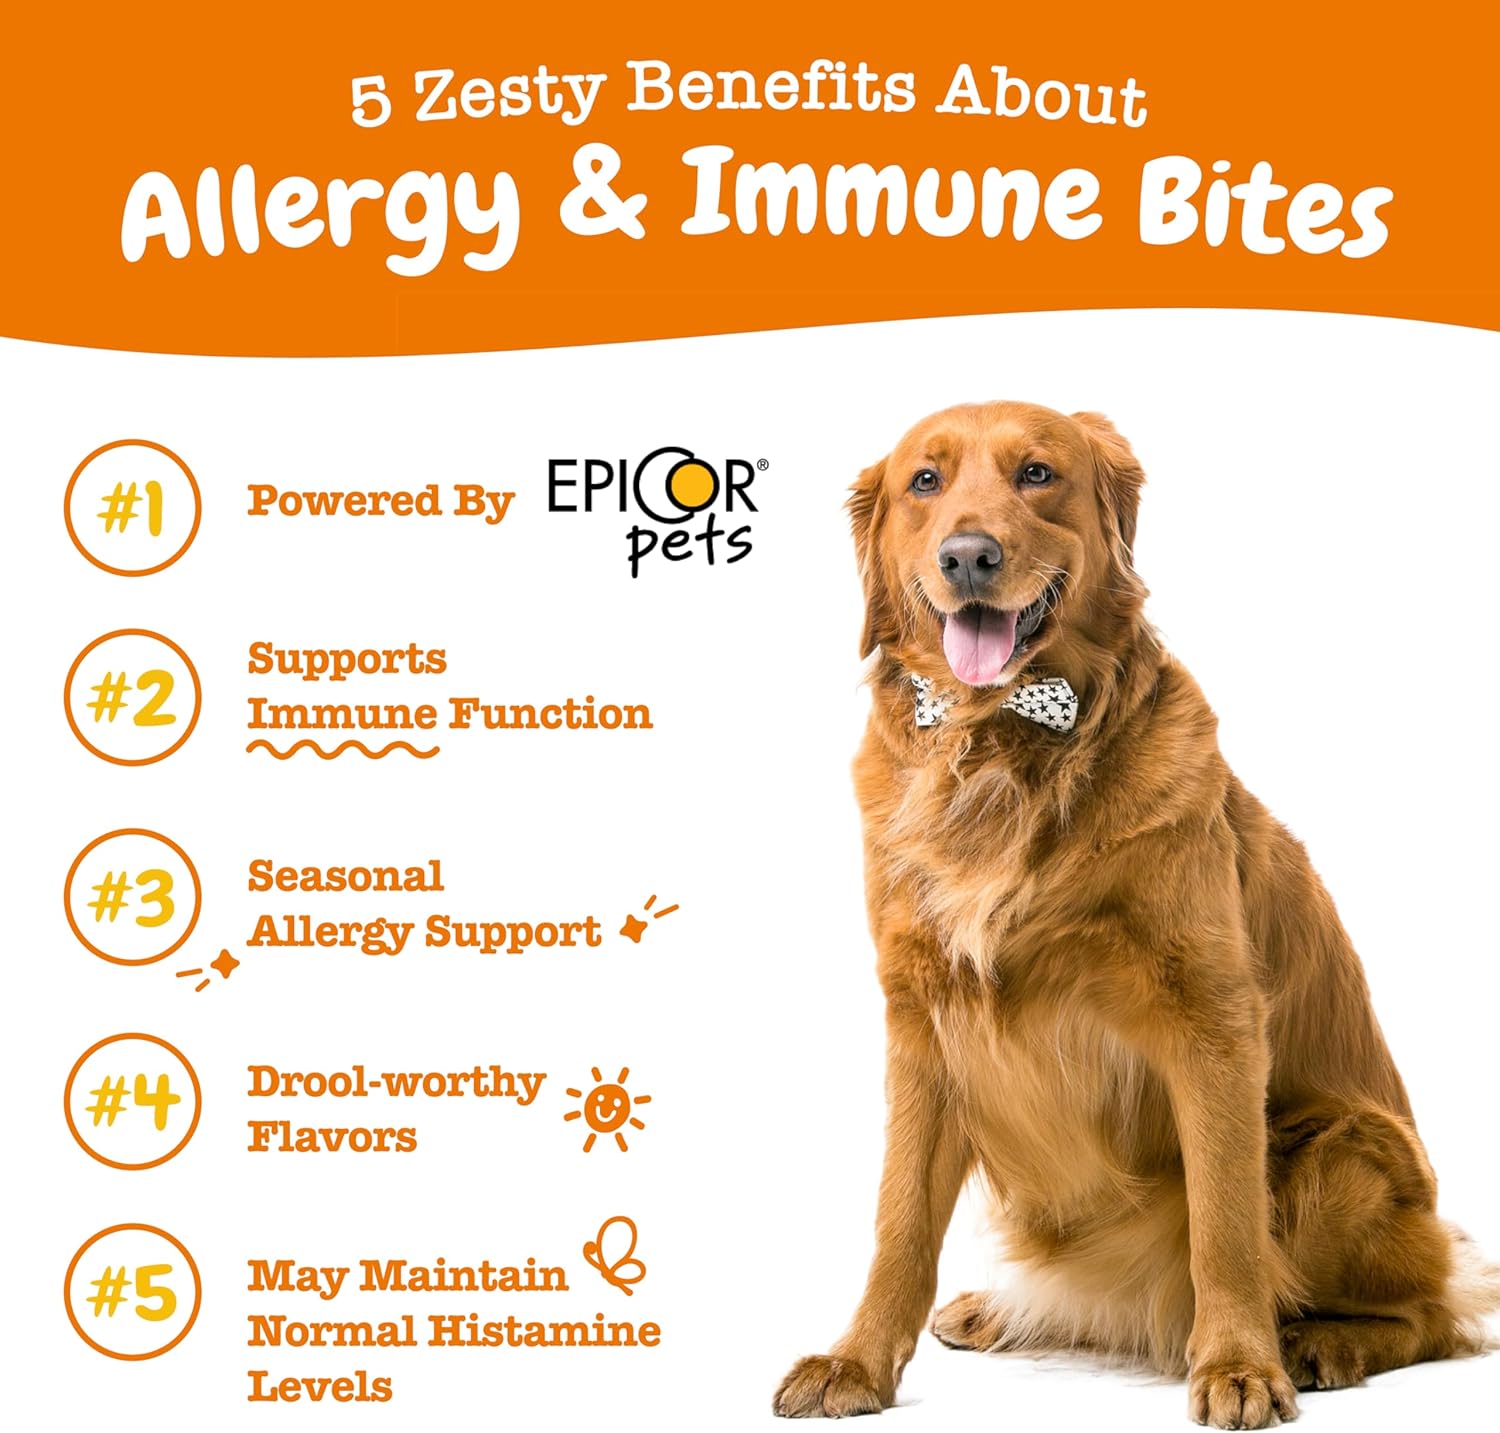 Allergy & Immune Bites for Dogs